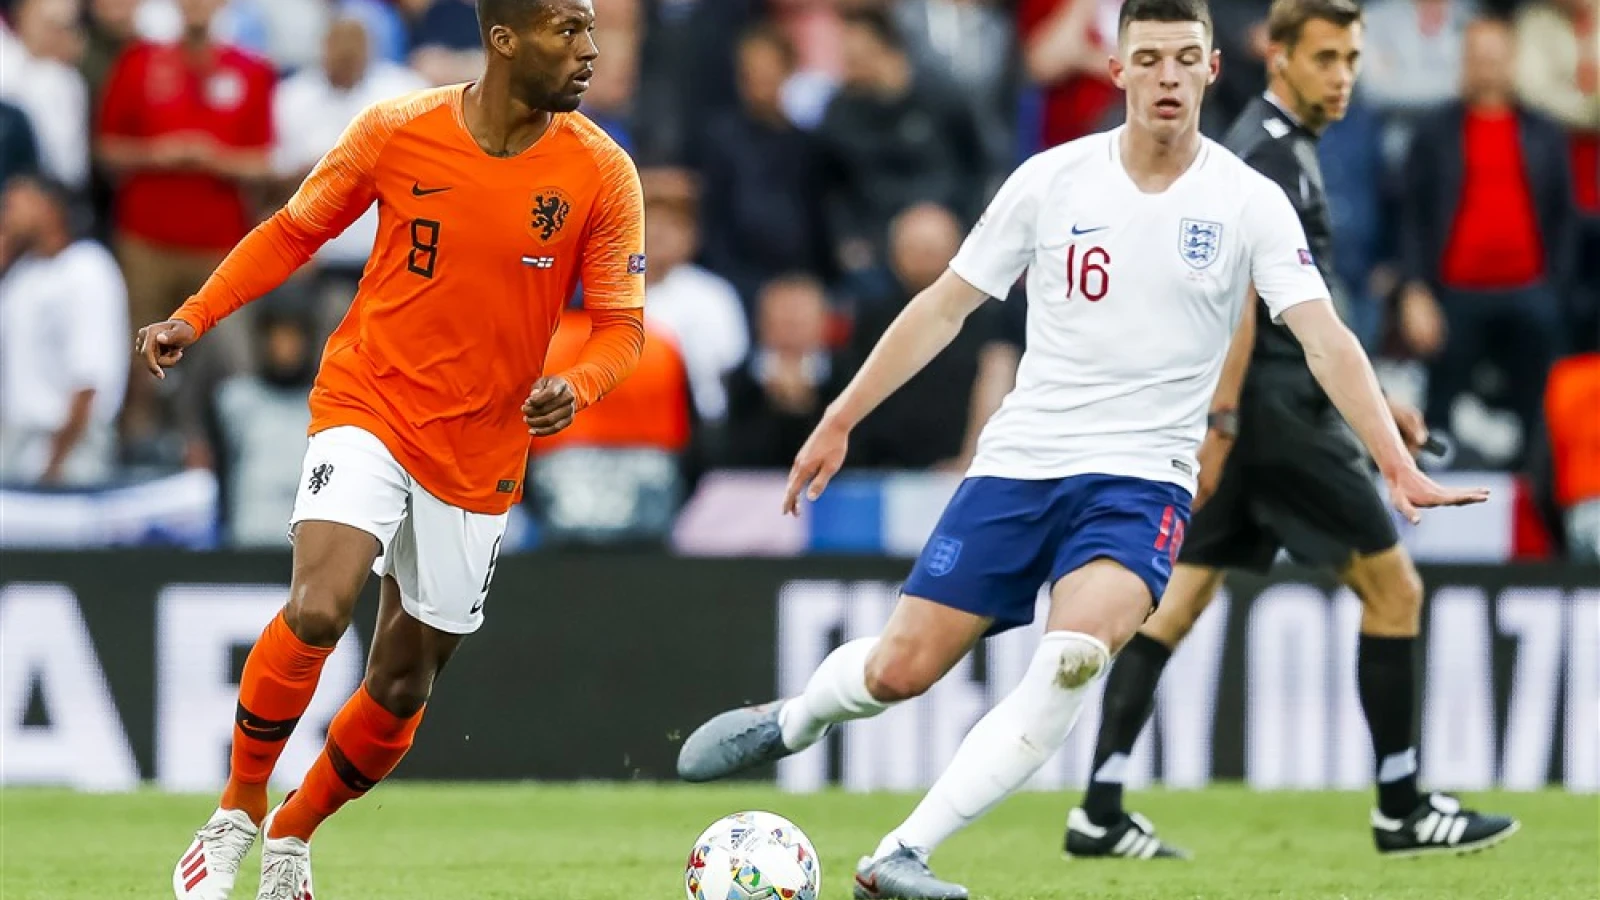 LIVE| Nederland - Engeland 3-1 | Einde wedstrijd